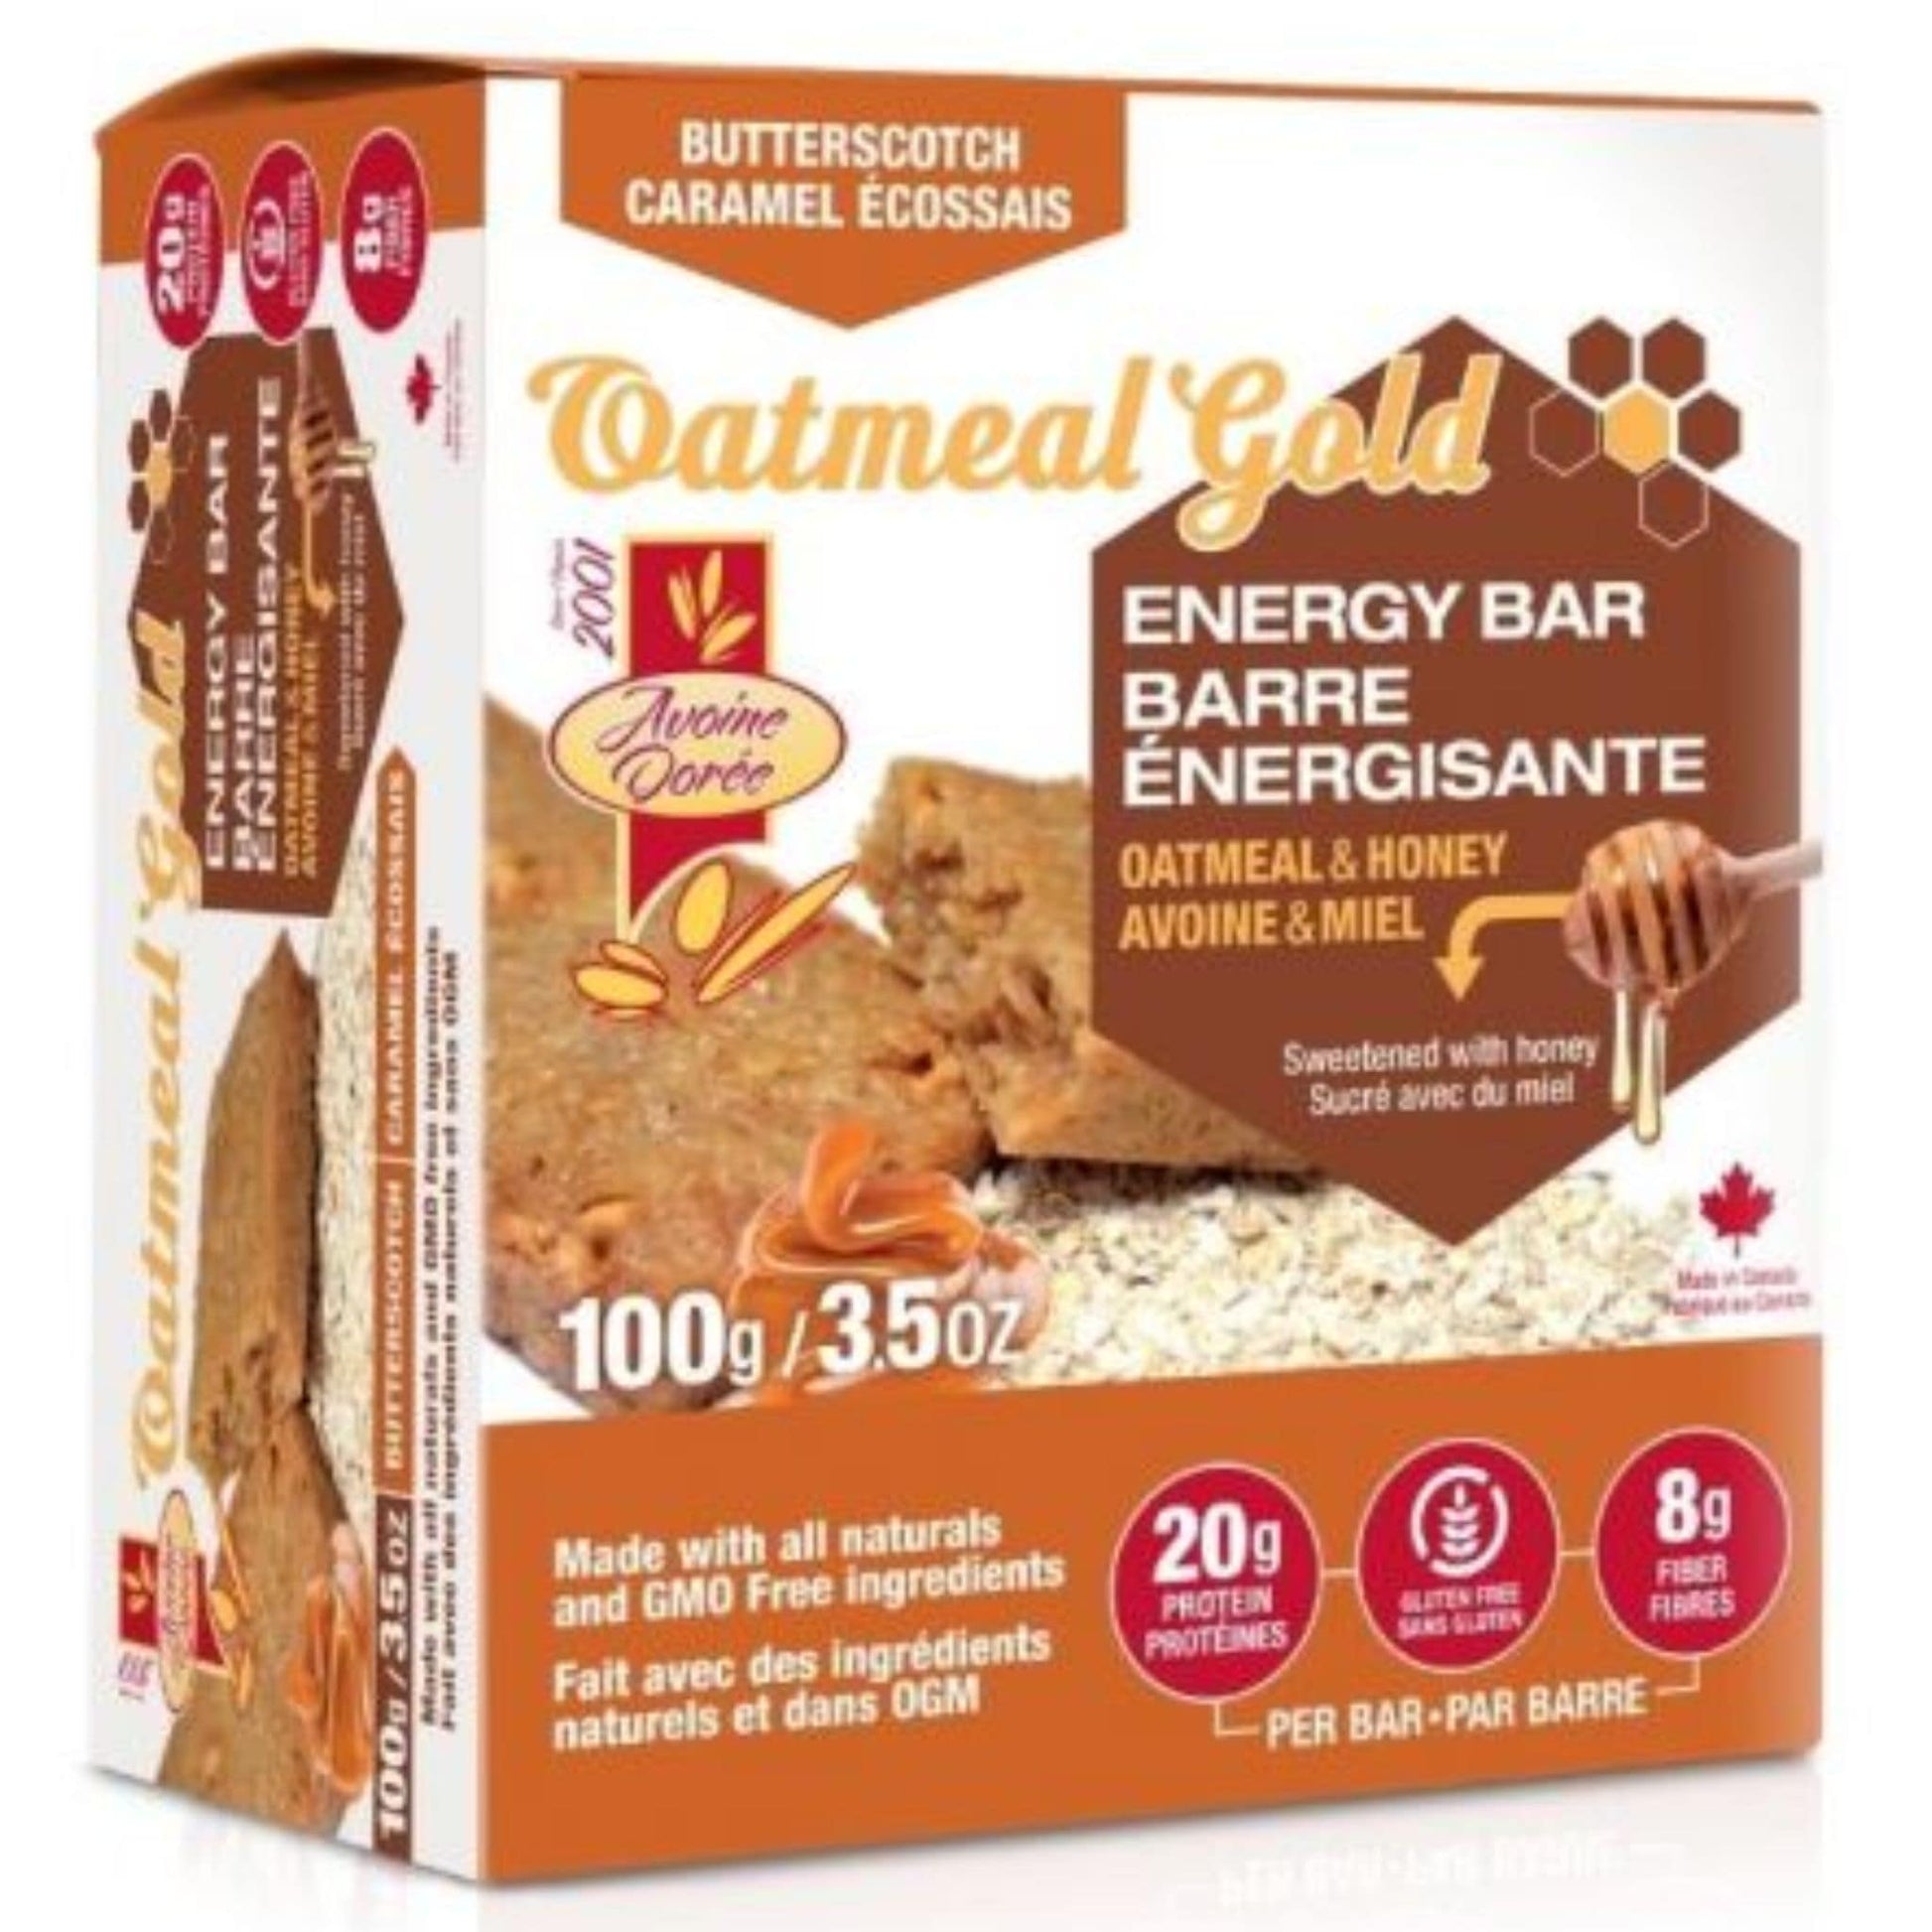 12 x 100g Butterscotch | Oatmeal Gold energy Bar All natural